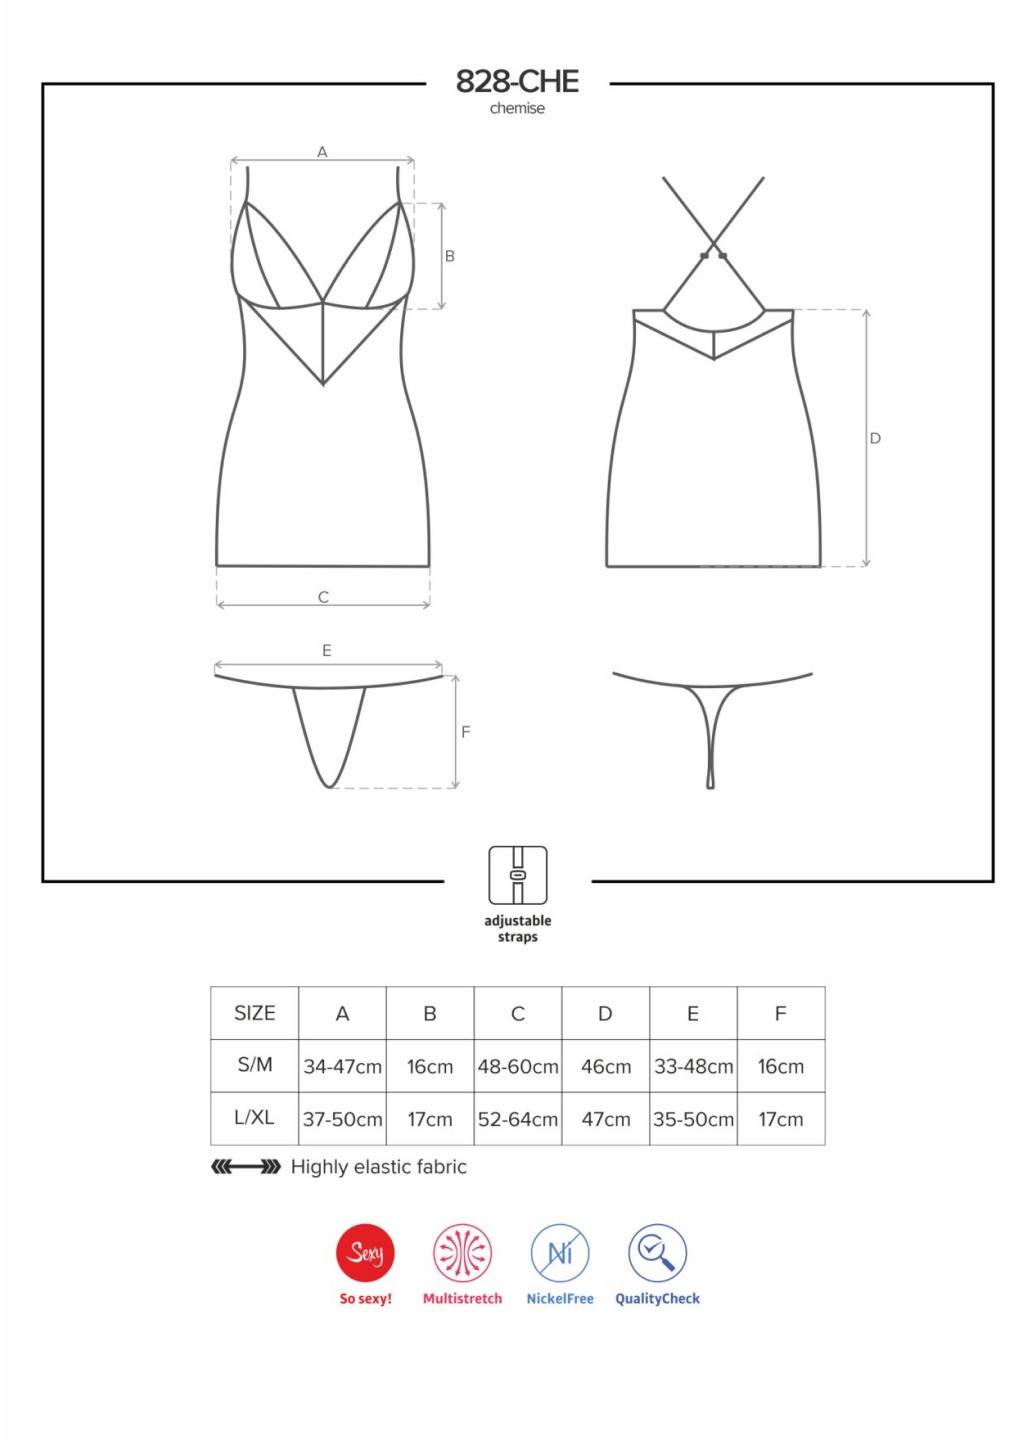 Сатиновий комплект для сну з мереживом 828-CHE-1 chemise & thong L/XL, чорний, сорочка, ст Obsessive (276392858)